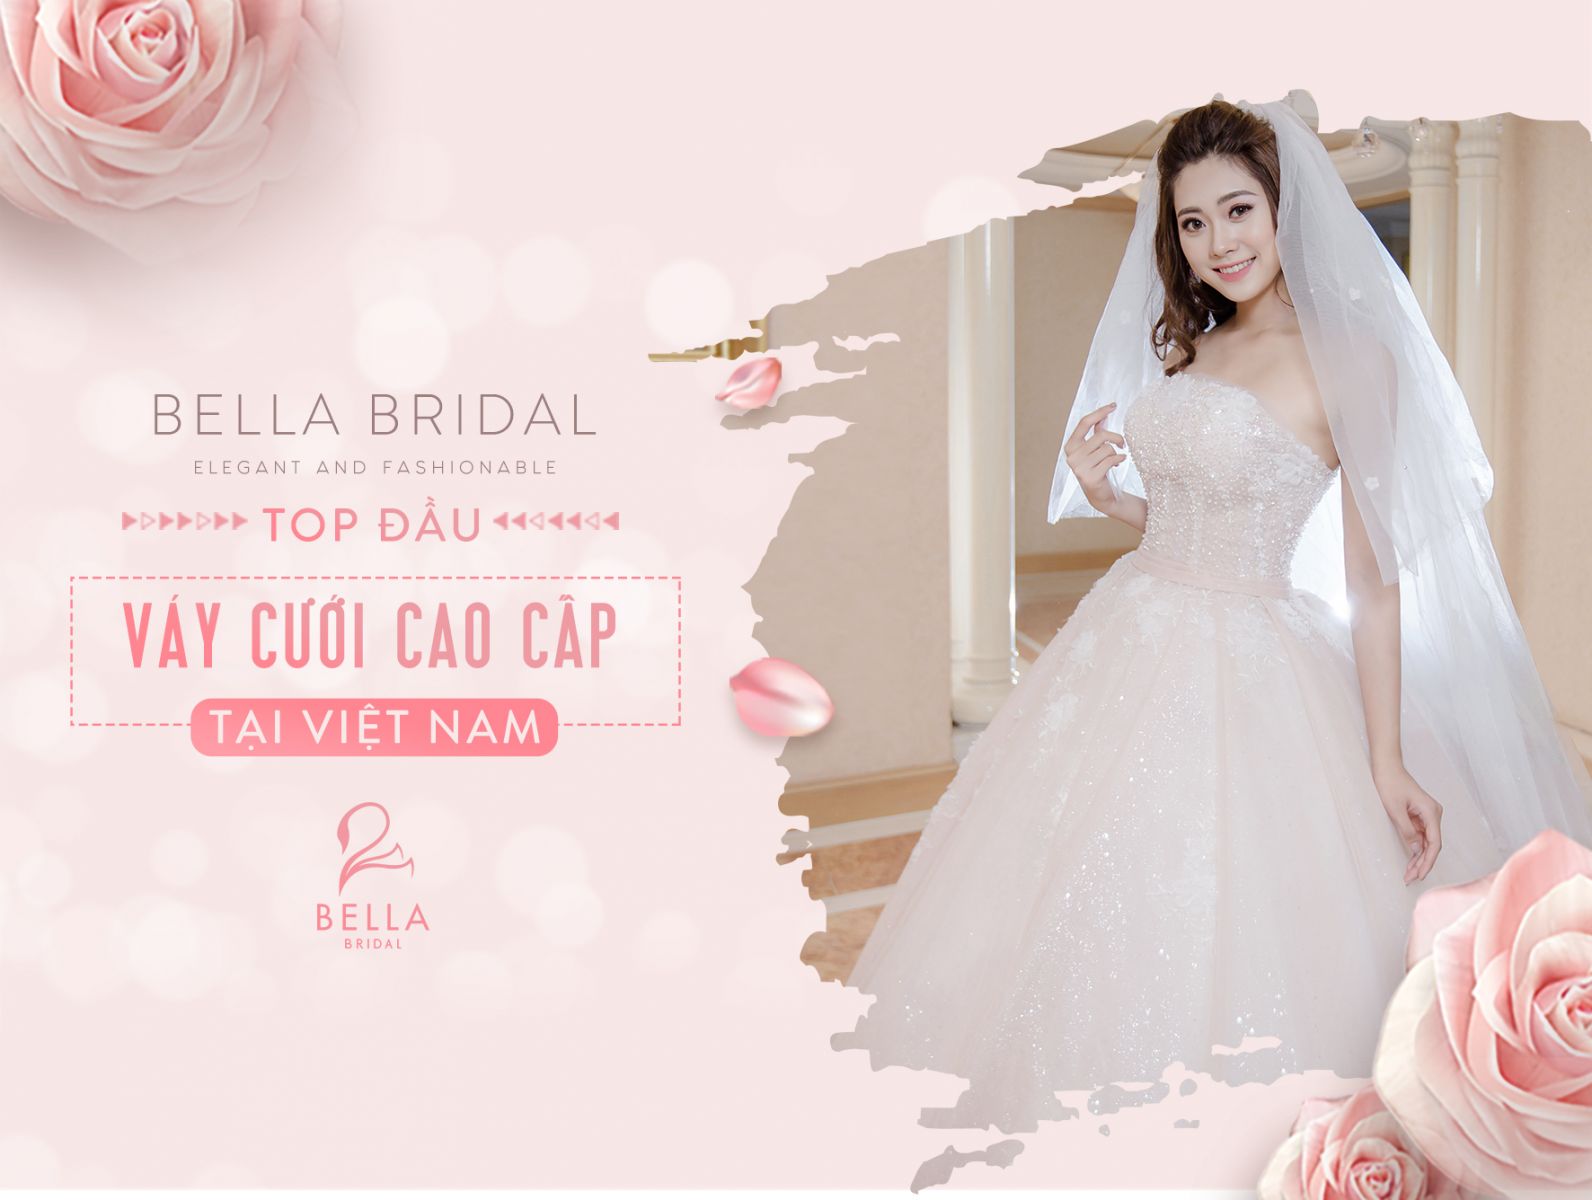 Cơ hội sở hữu váy cưới đẹp với chi phí trong mơ chỉ có tại Bella Bridal - Top đầu về Váy cưới cao cấp